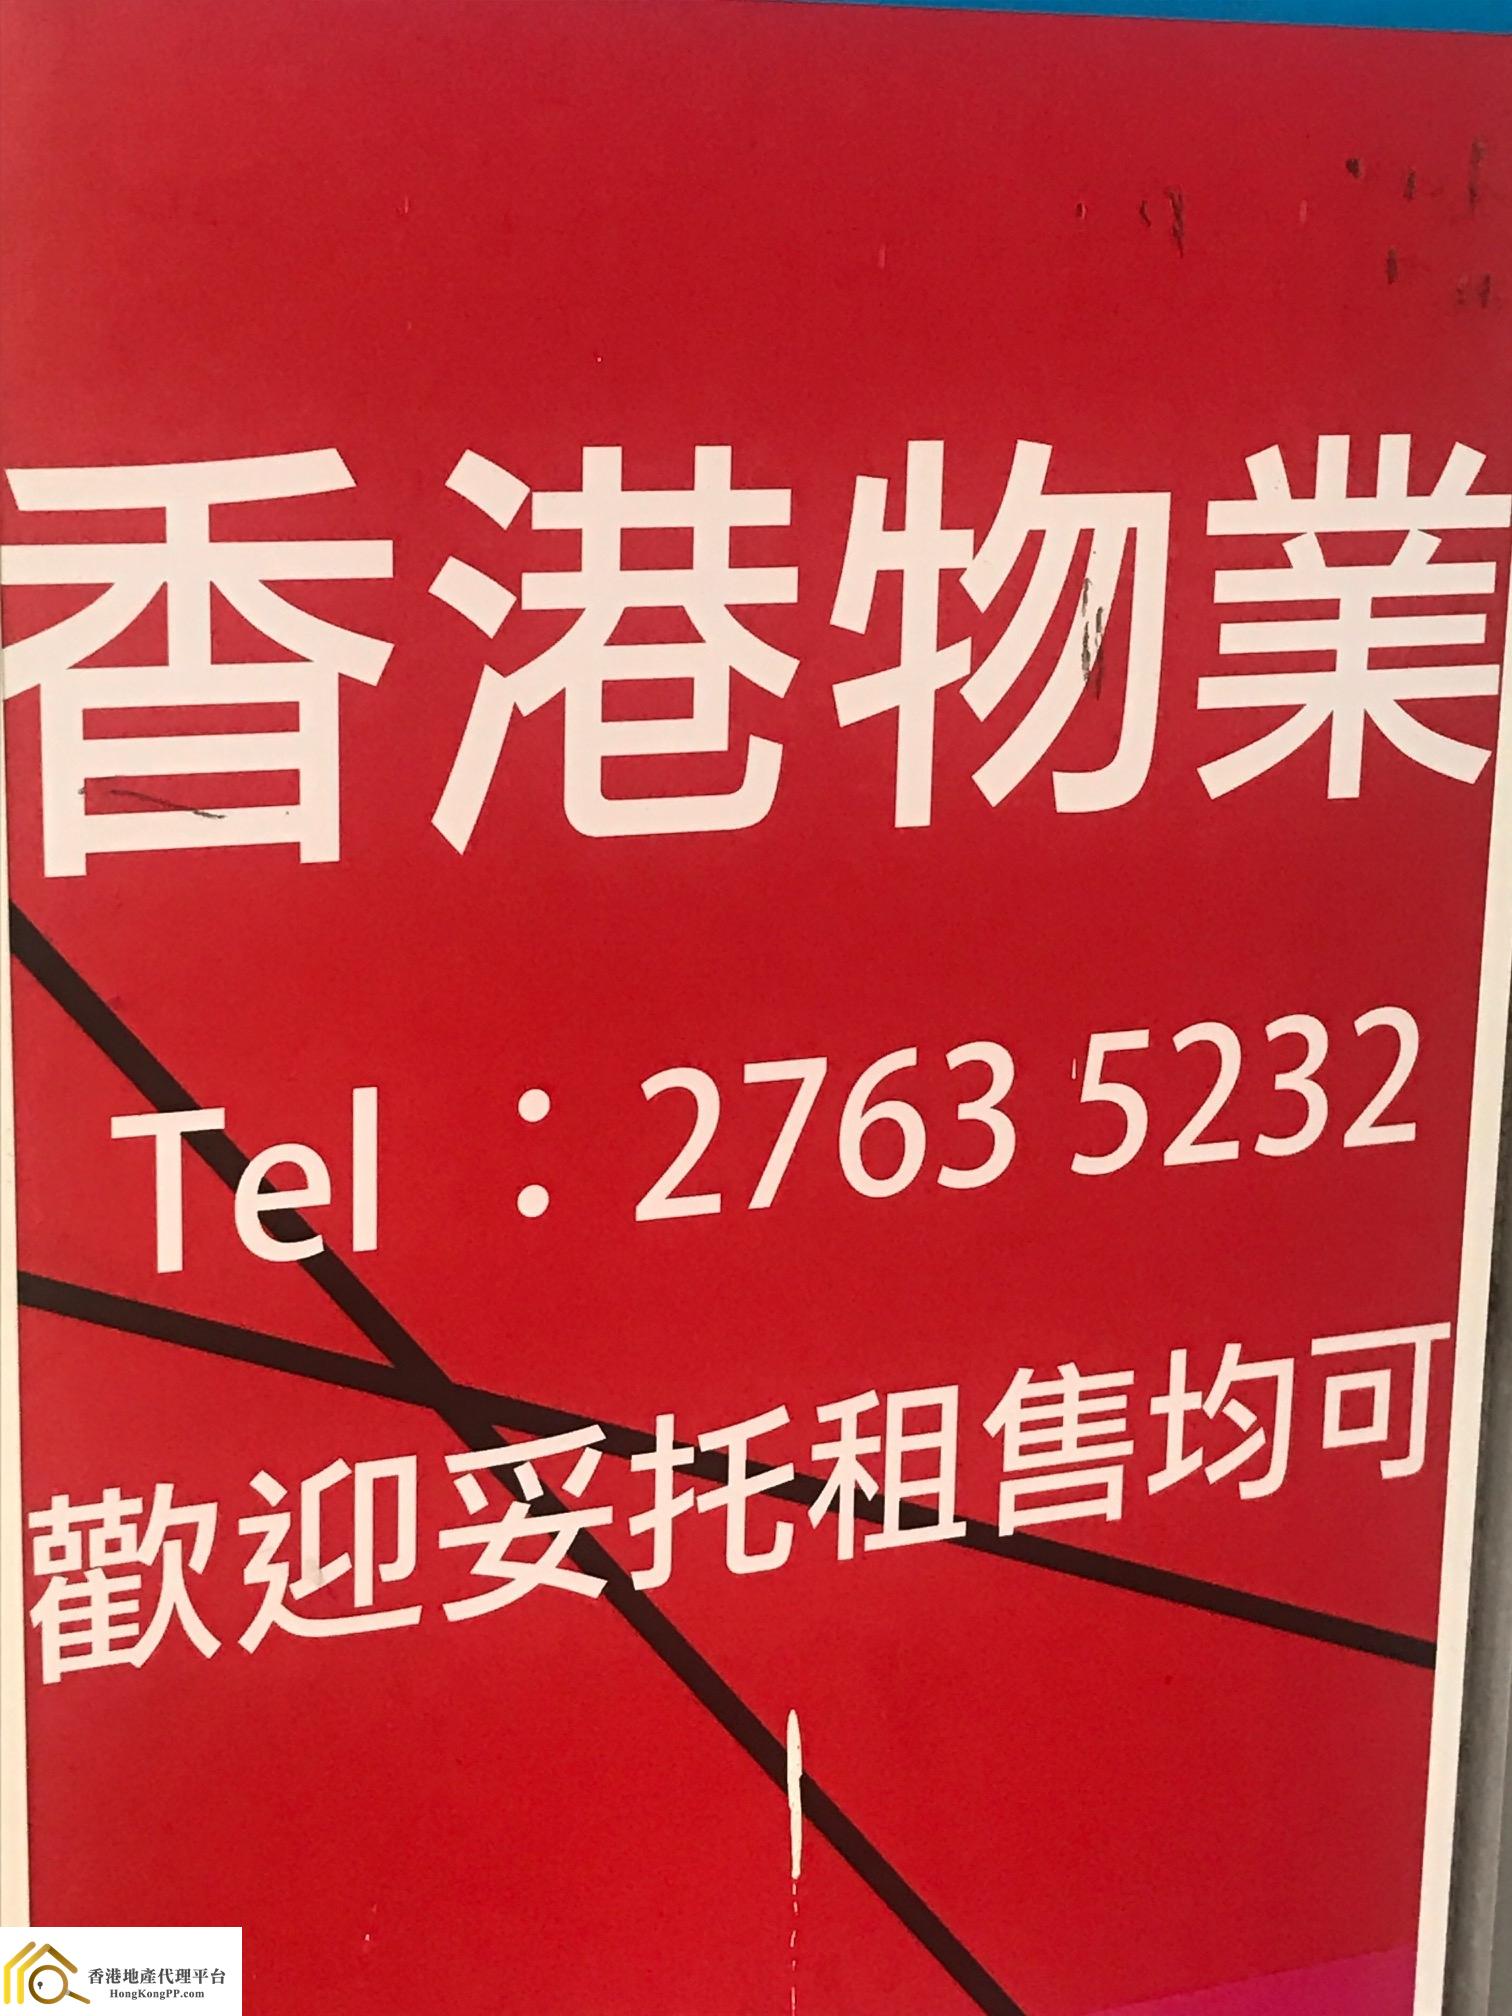 地產代理公司 Estate Agent: 香港物業代理